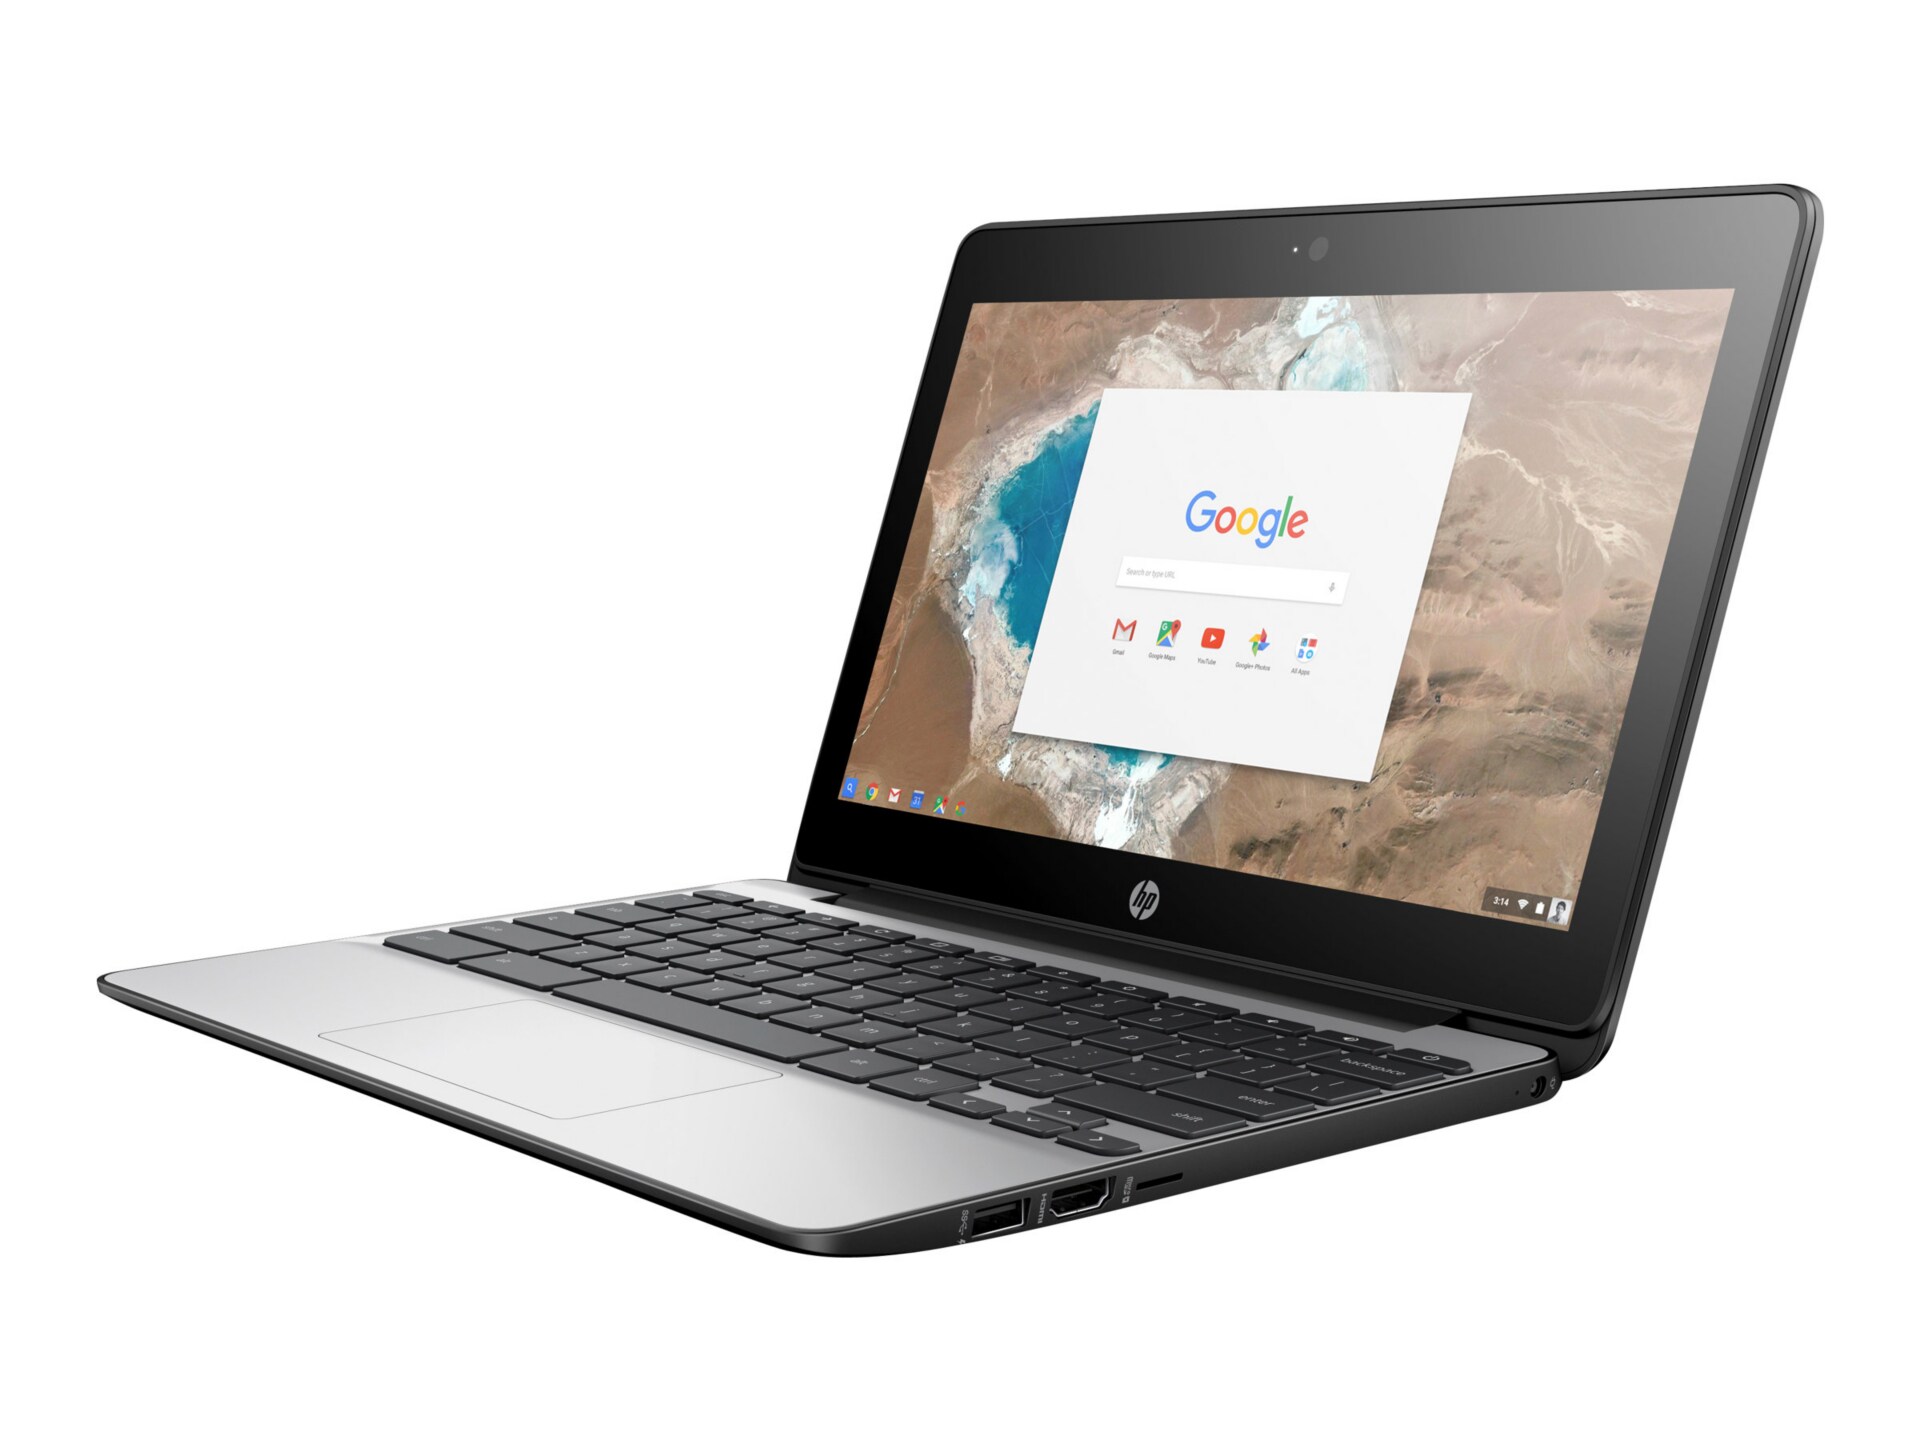 HP Chromebook 11 G4 - Education Edition - 11.6" - Celeron N2840 - 4 GB RAM - 16 GB SSD - US